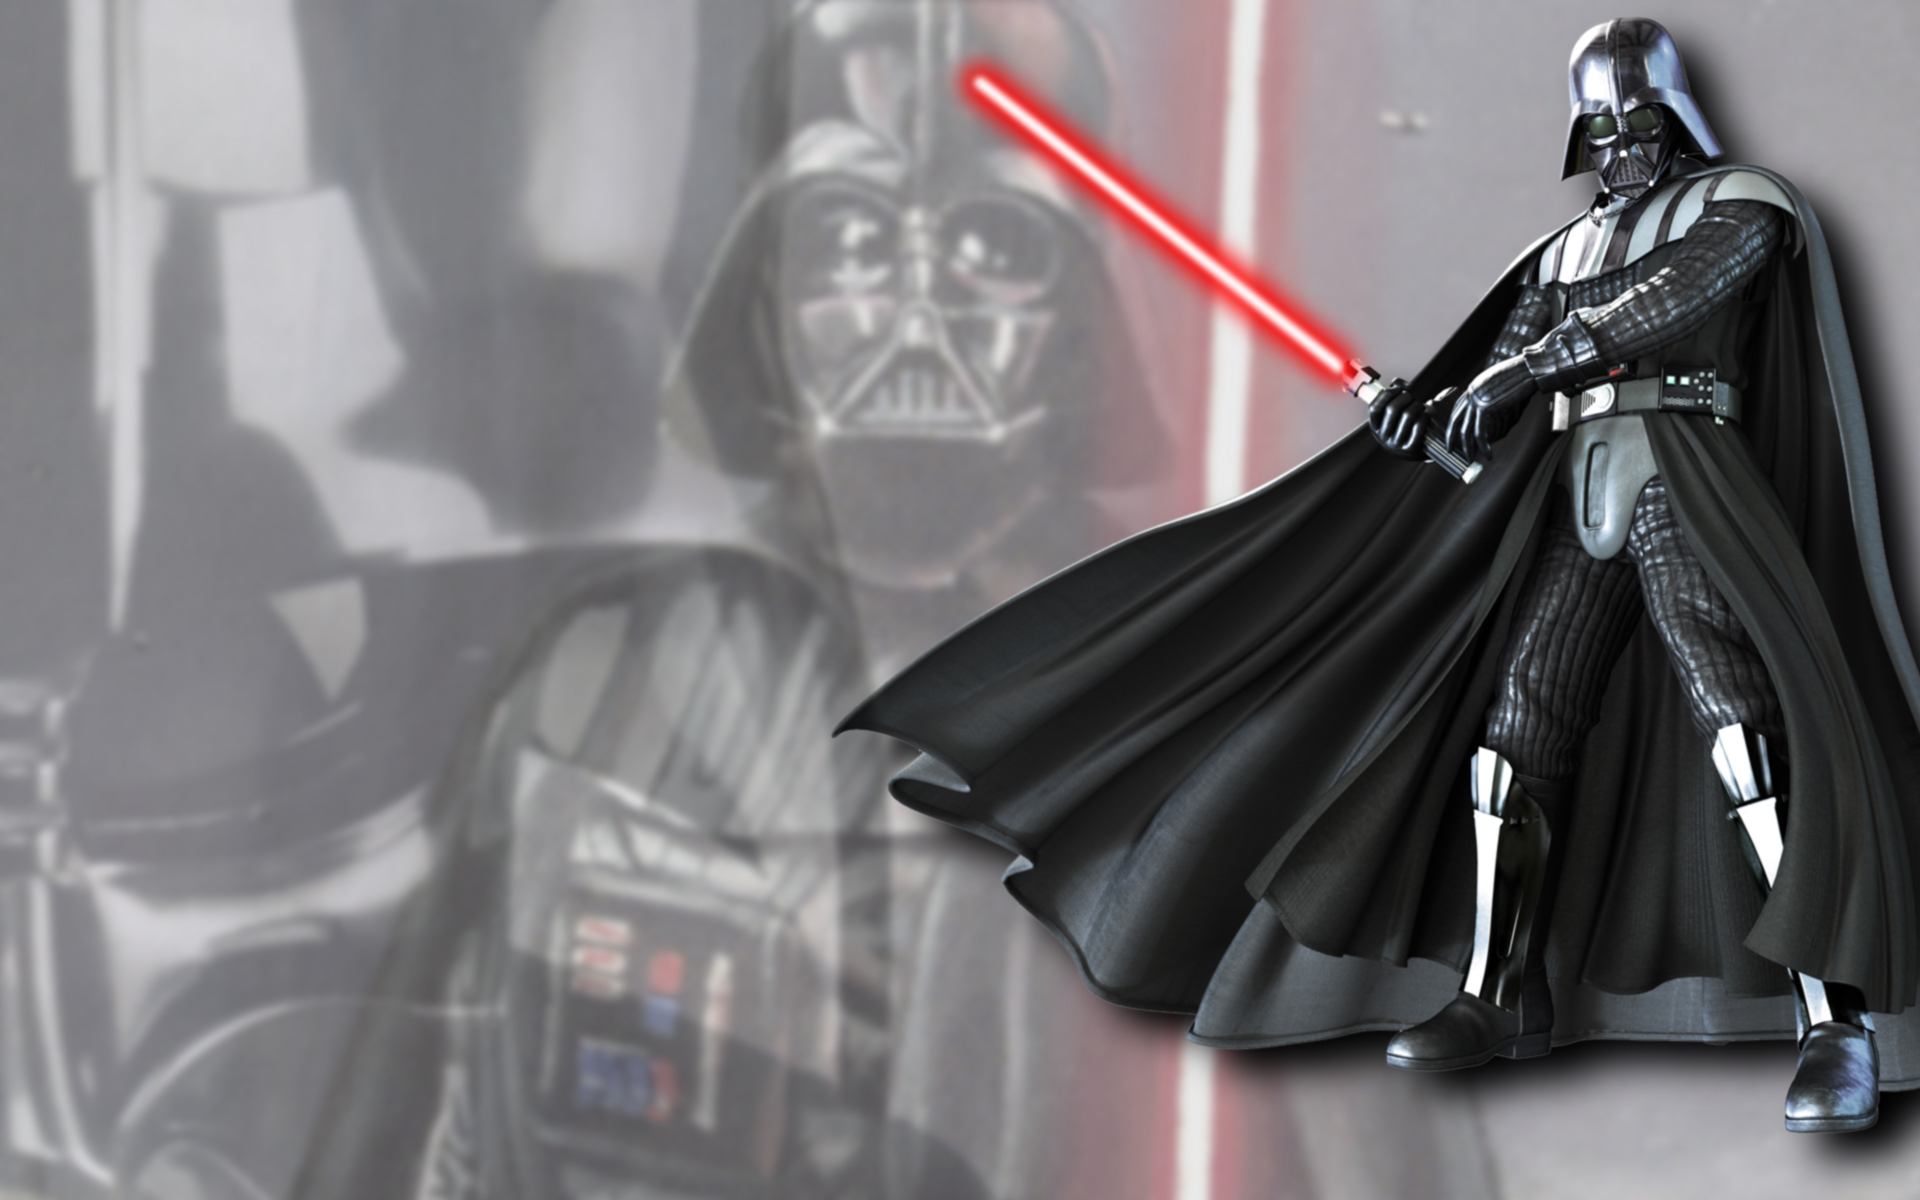 Star Wars Wallpaper Lightsabers Darth Vader